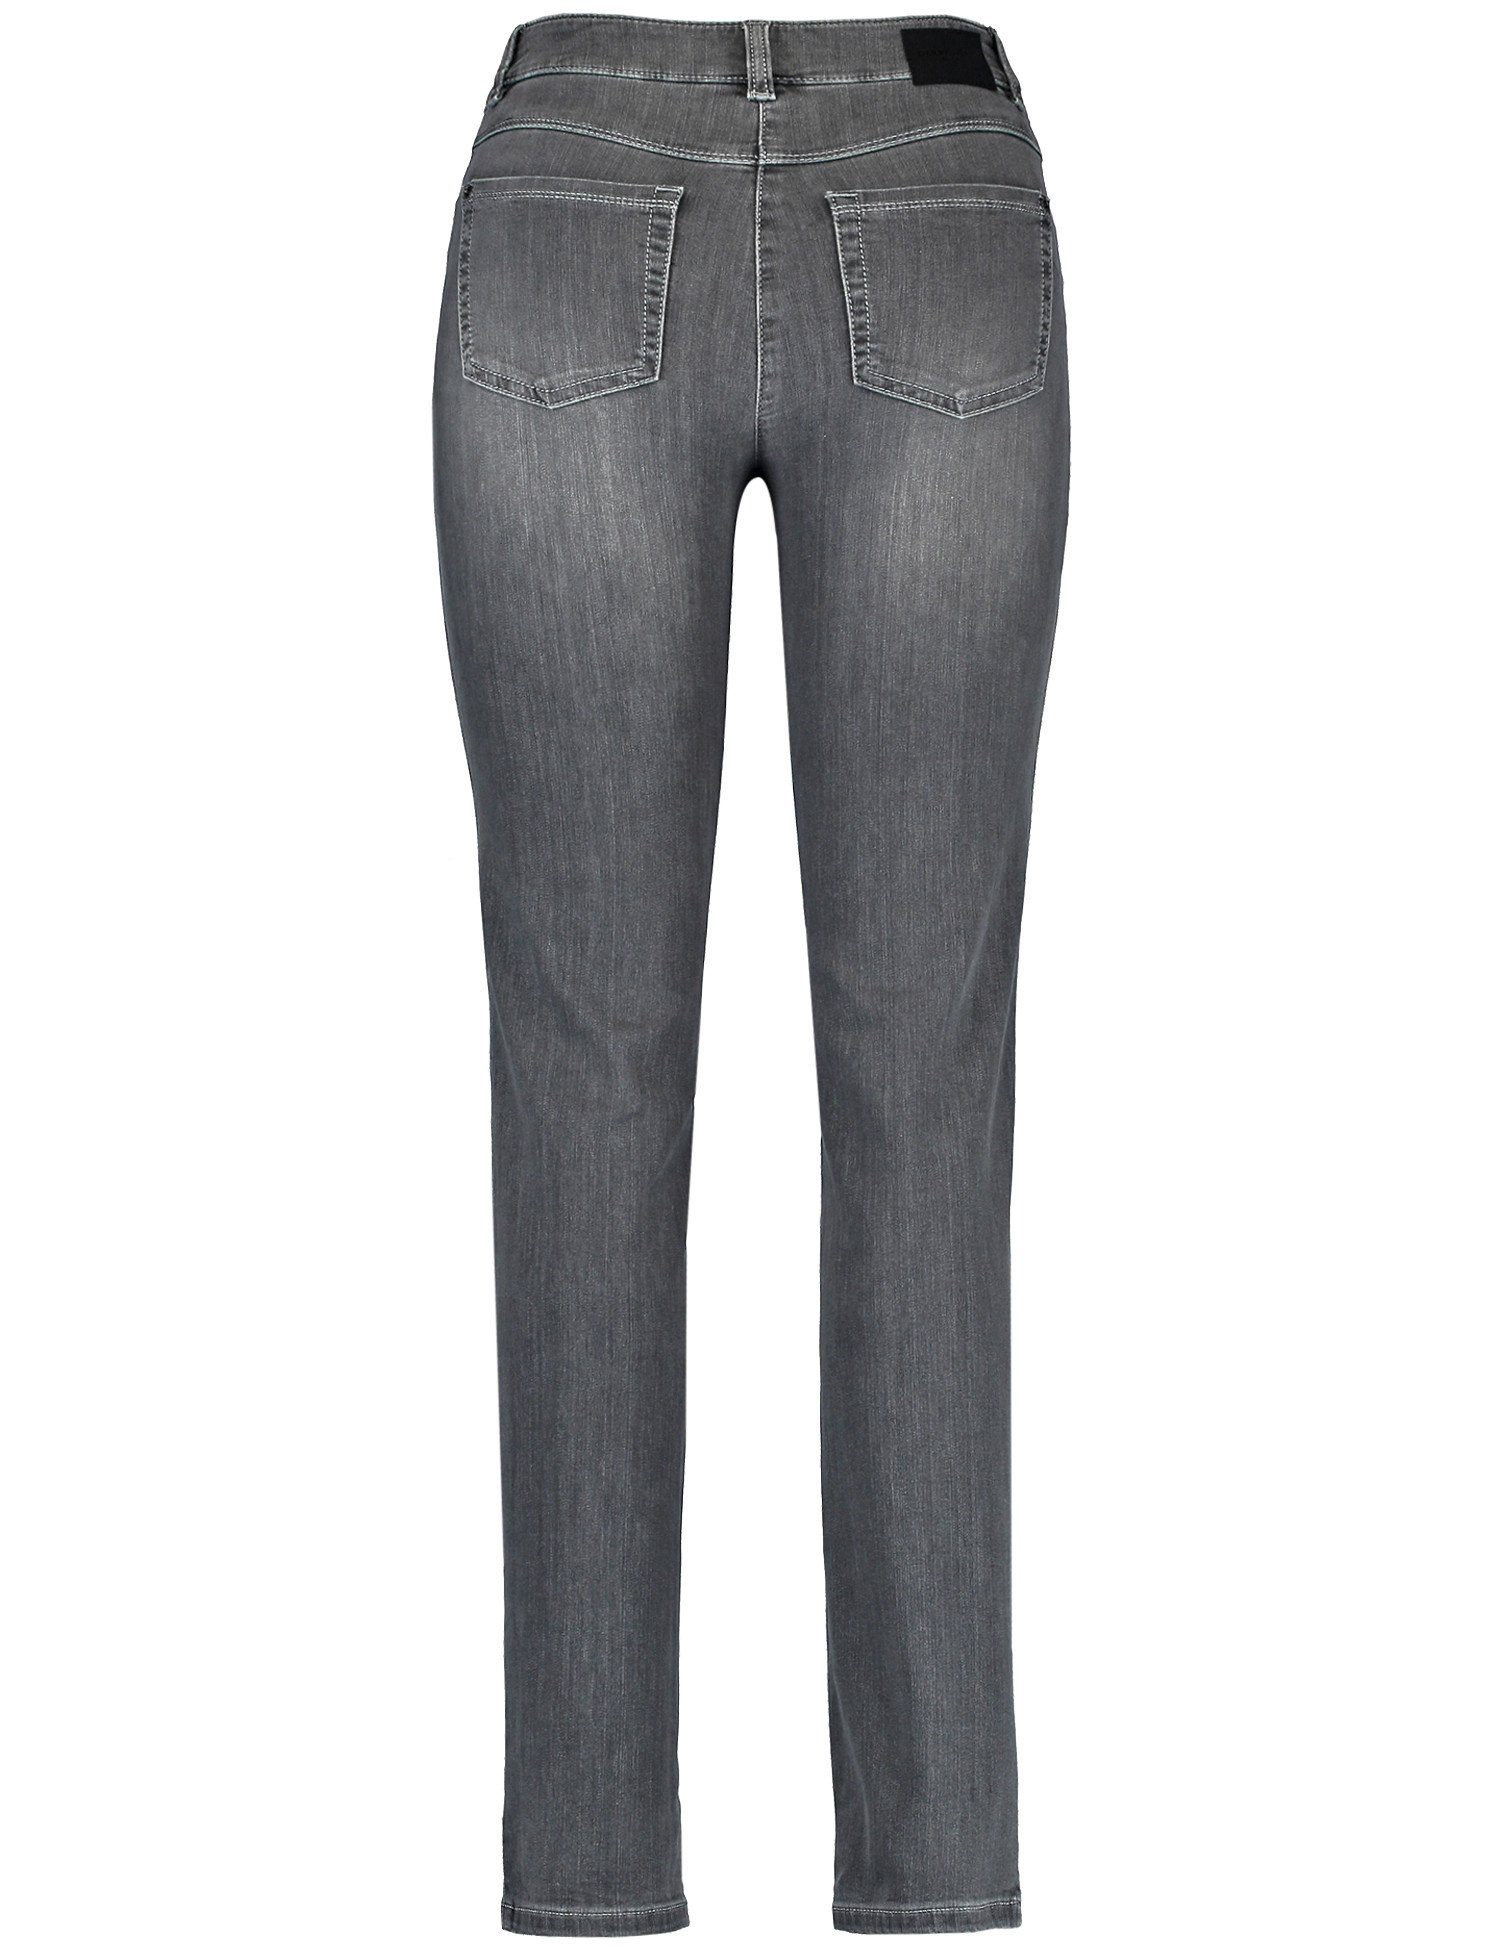 Jeans use GERRY Denim Anthra Slimfit 5-Pocket WEBER Stretch-Jeans mit Best4me